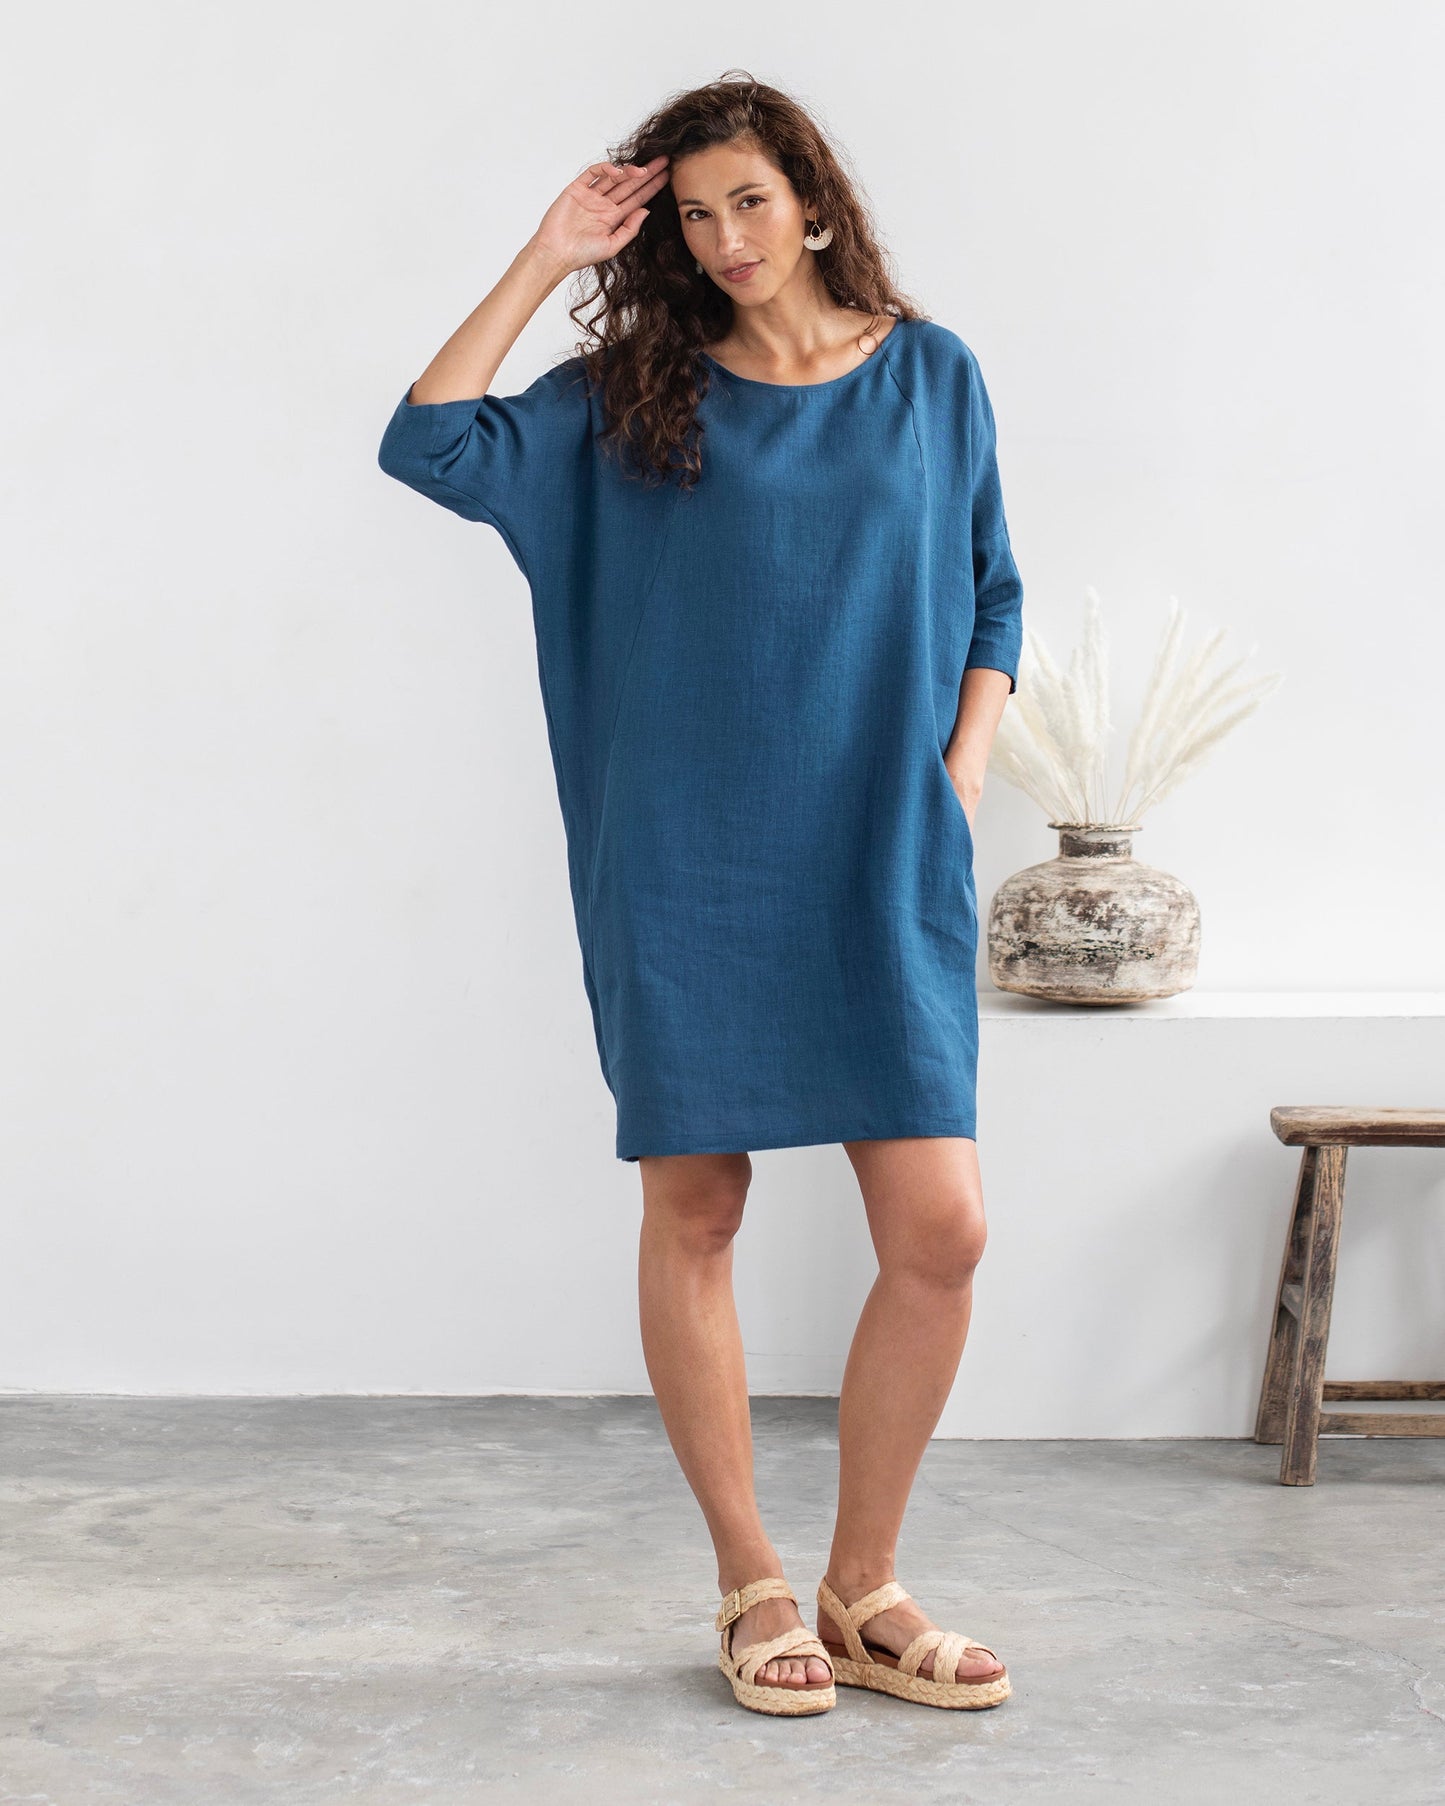 Relaxed fit linen dress ARUBA in navy blue - MagicLinen